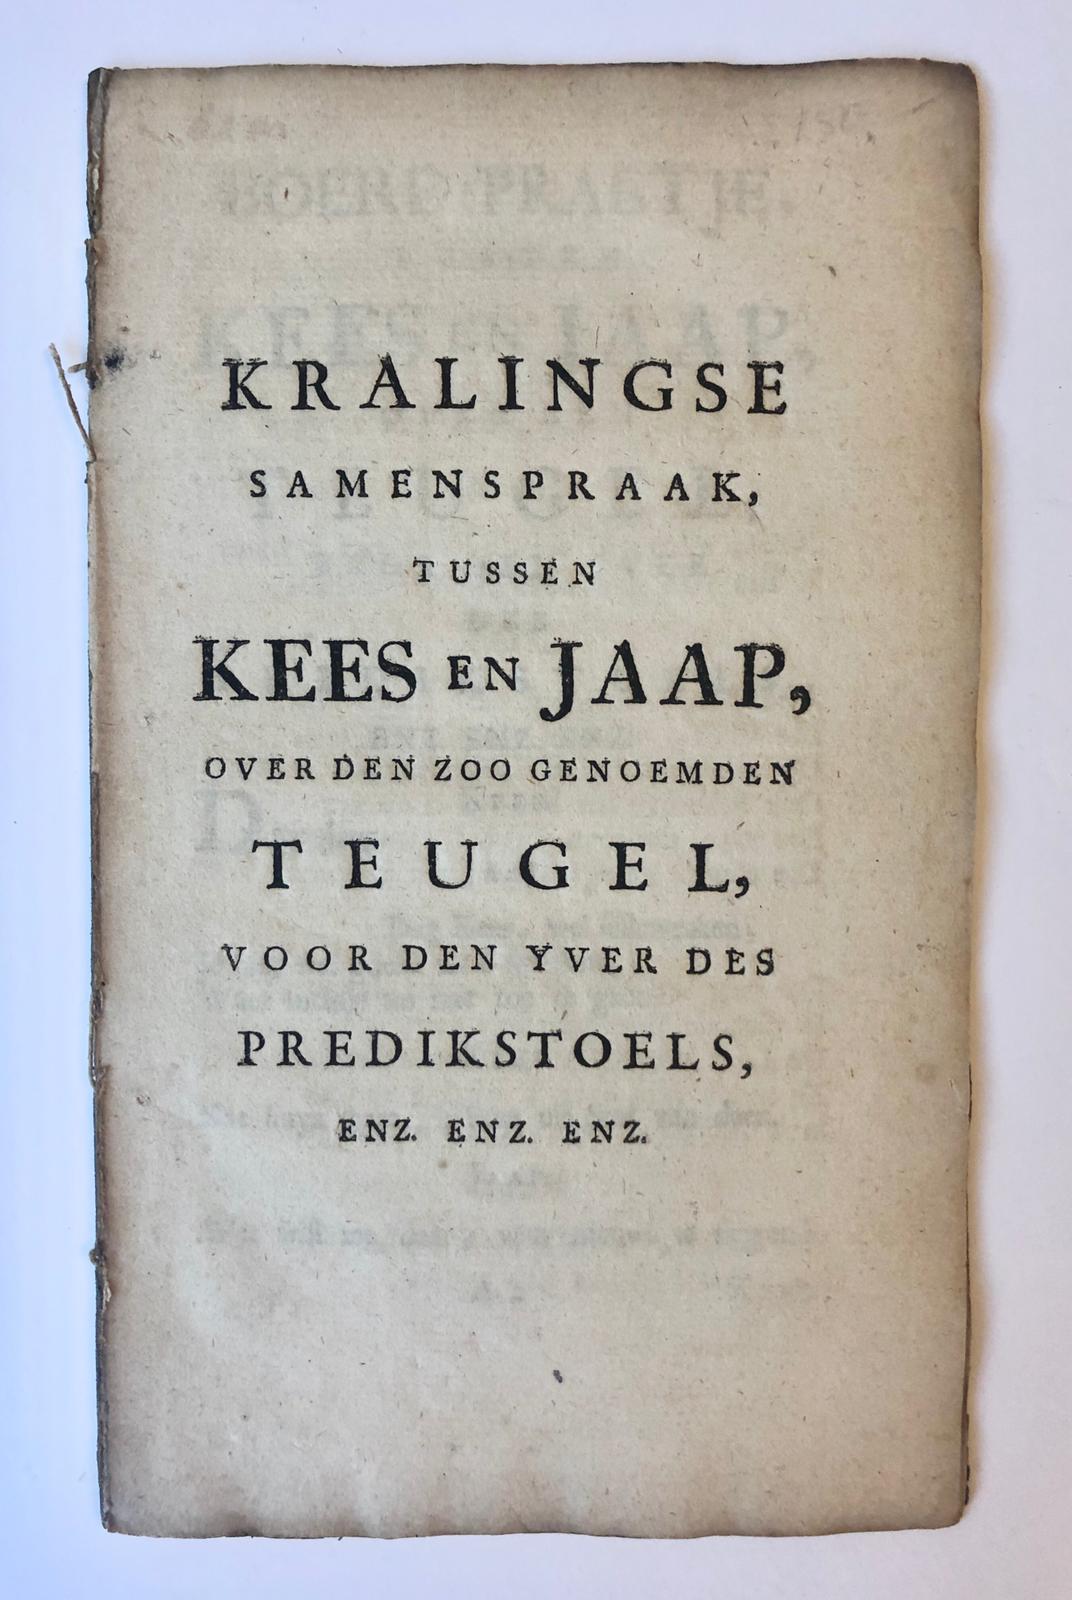 [Rotterdam, [1748]] Kralingse samenspraak, tussen Kees en Jaap, over den zoo genoemden teugel, voor den yver des predikstoels, Enz. Enz. Enz., [s.l., s.n.], [1748], 23 pp.